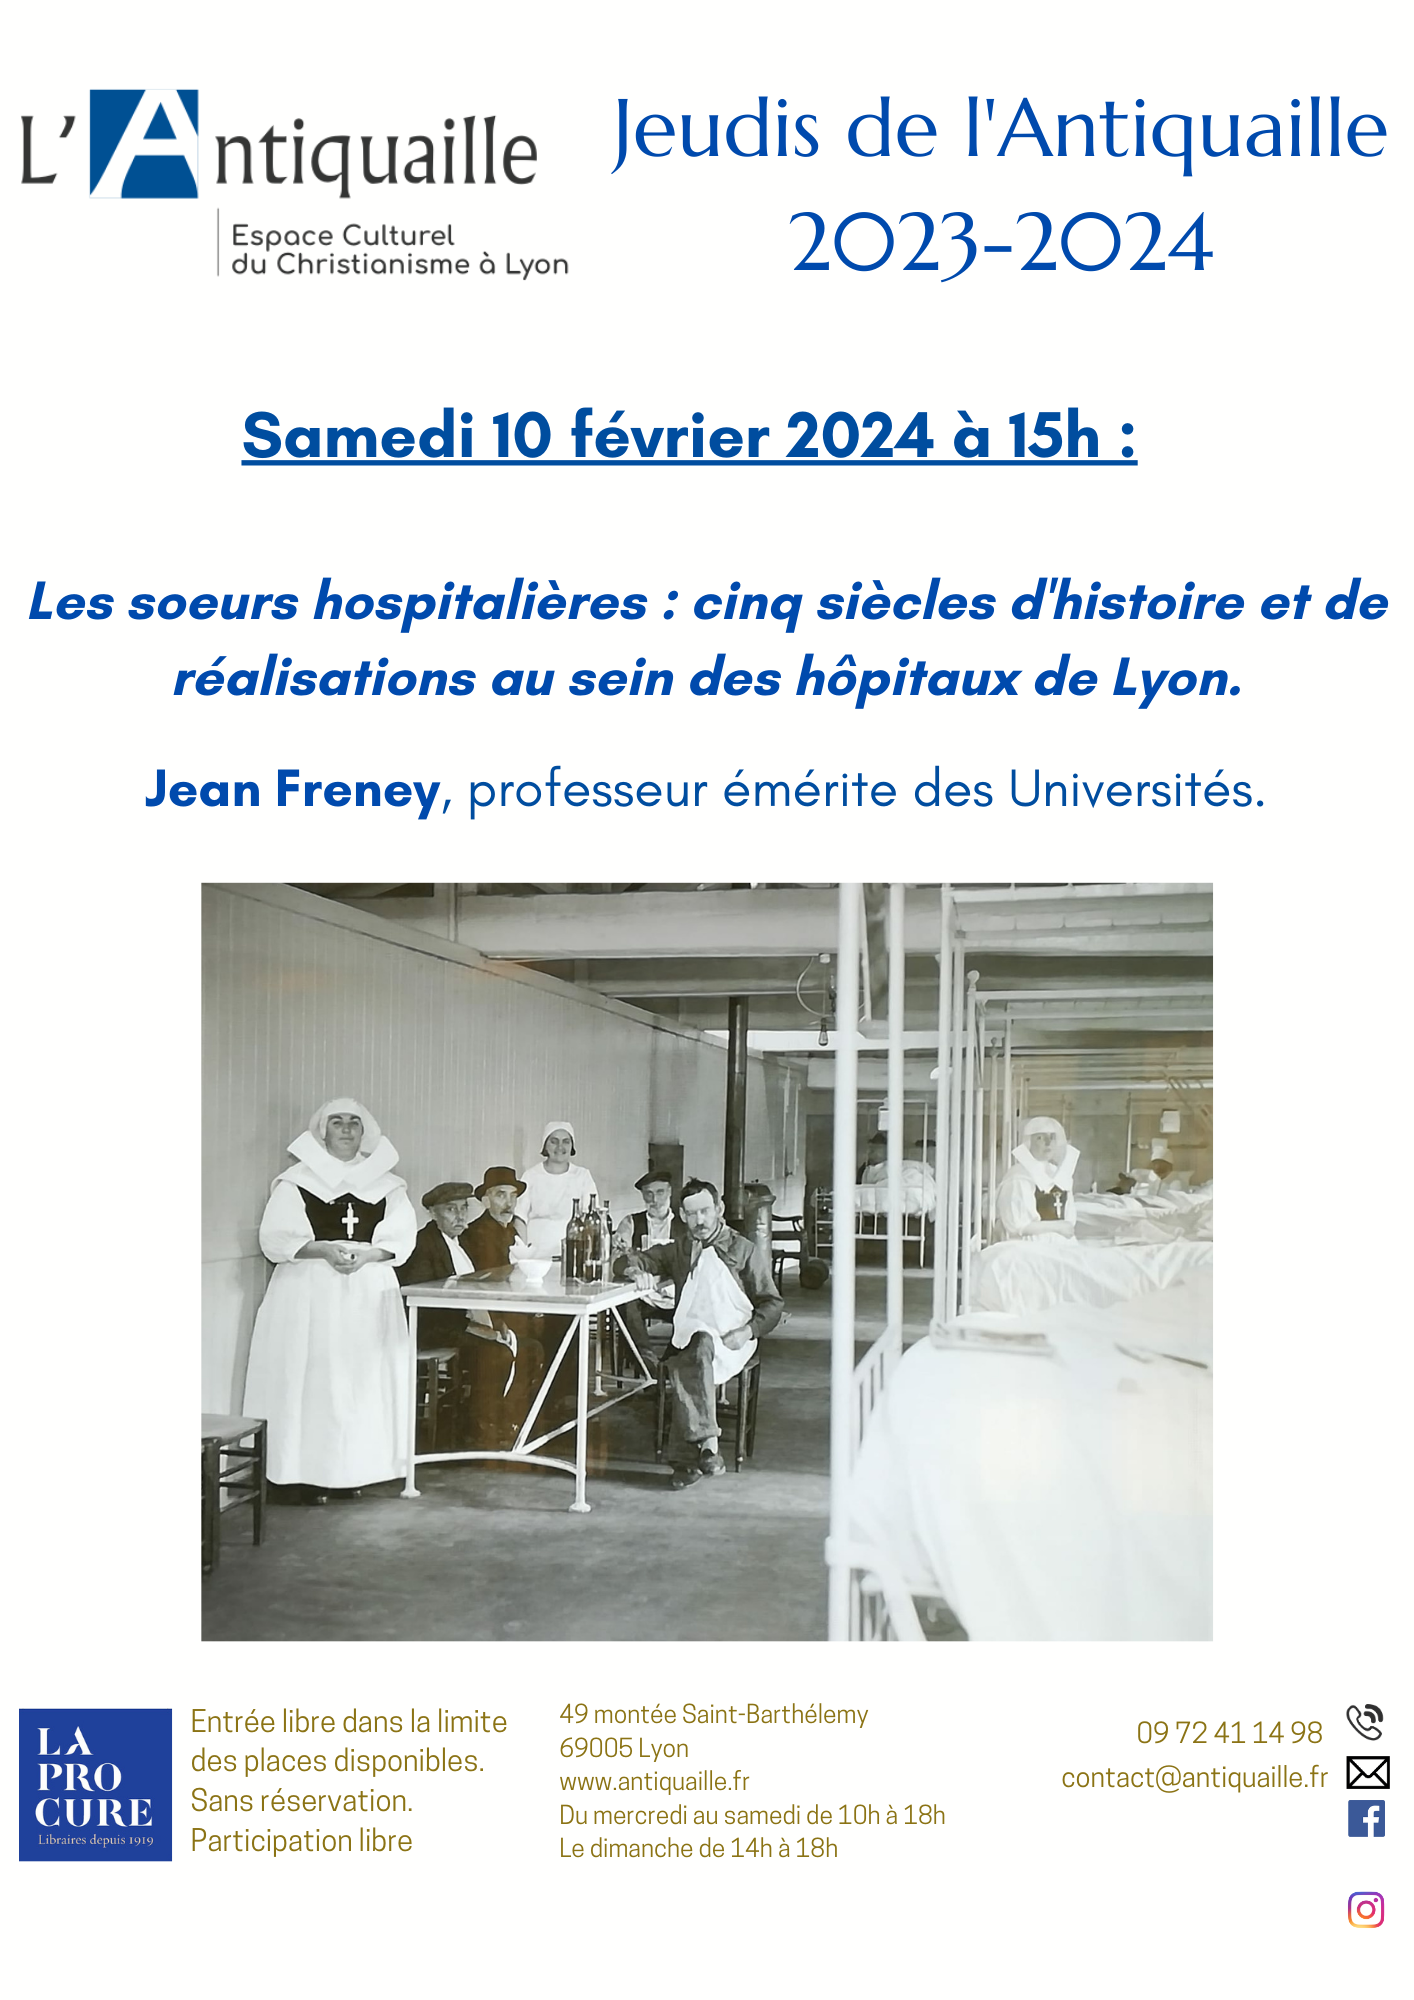 Les sœurs hospitalières : cinq siècles d’histoire et de réalisations au sein des hôpitaux publics de Lyon.